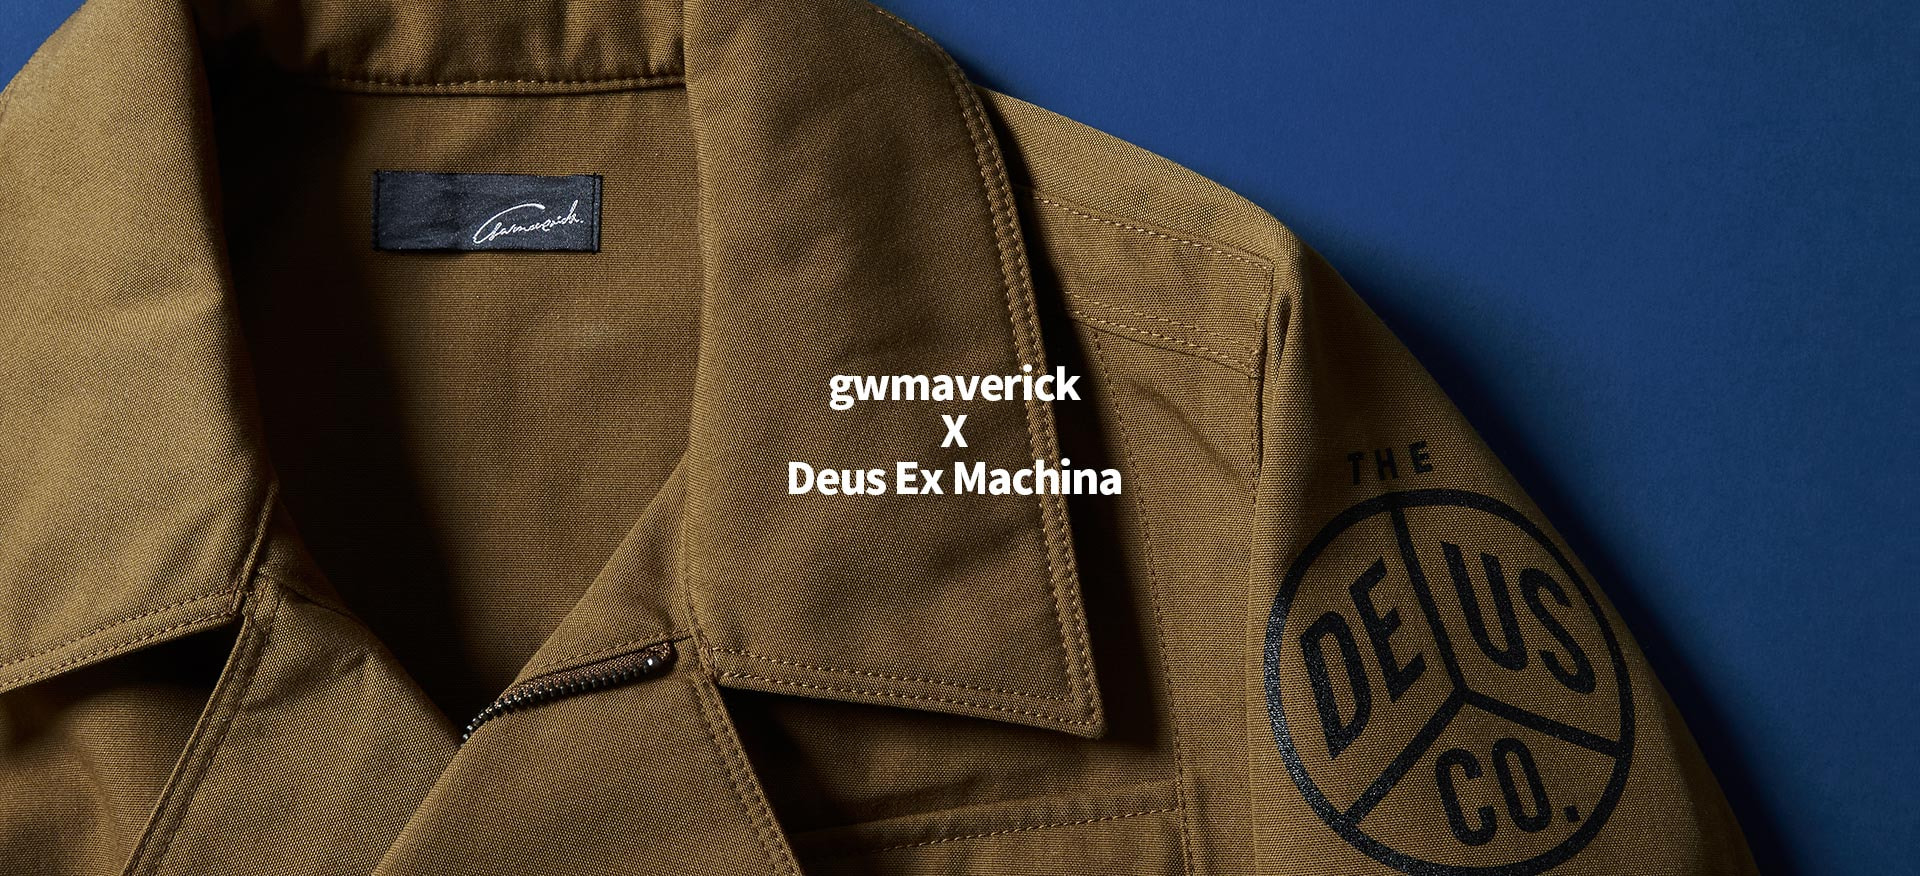 gwmaverick collaborated Deus Ex Machina モーターサイクルをカルチャーに持つ2大ブランドのスペシャルコラボレーション